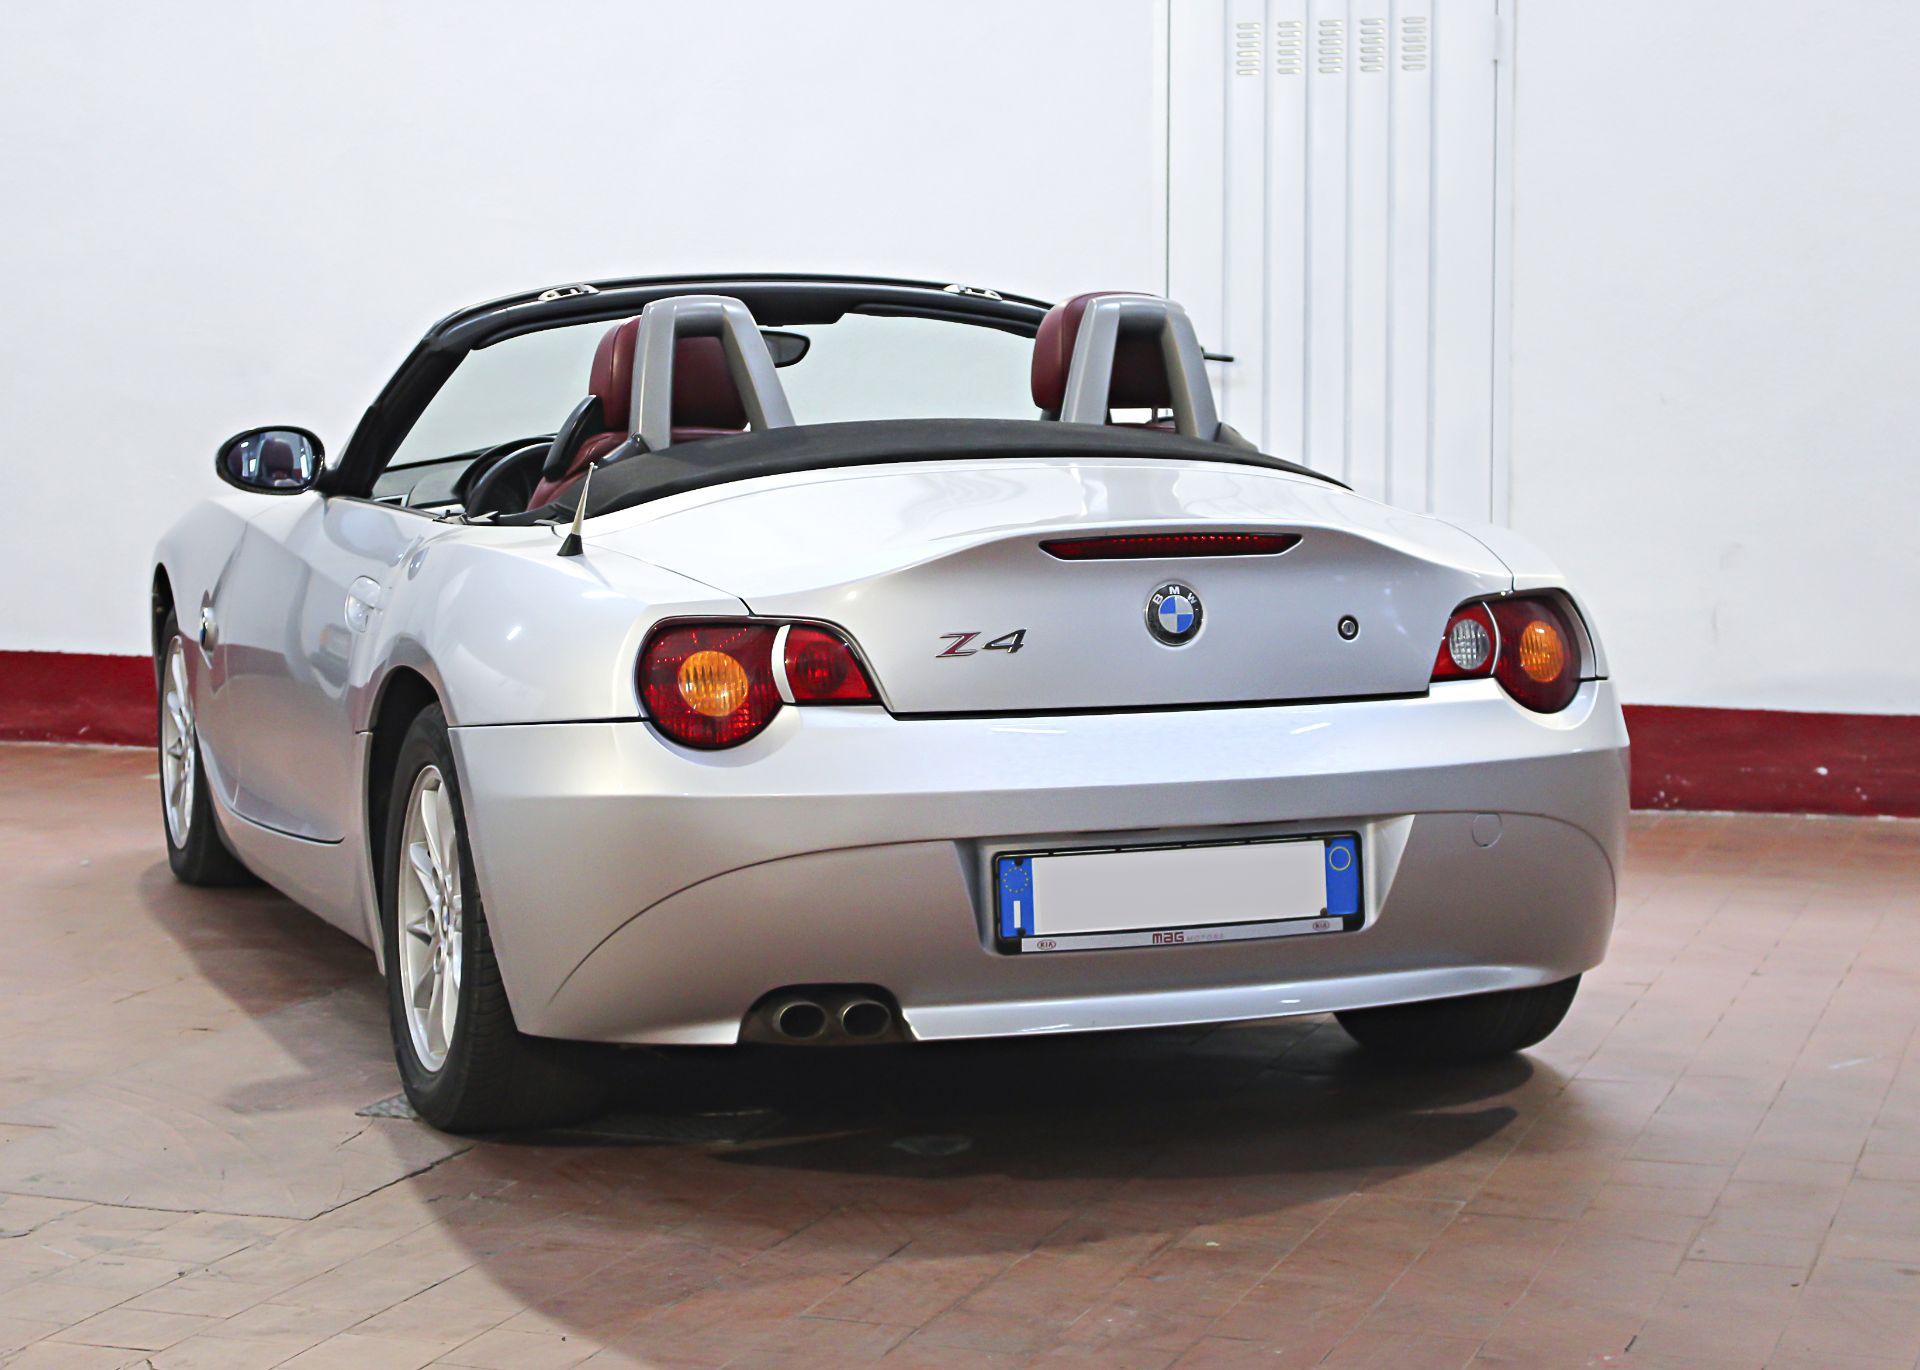 BMW Z4 2.5i 2003 - Image 2 of 3